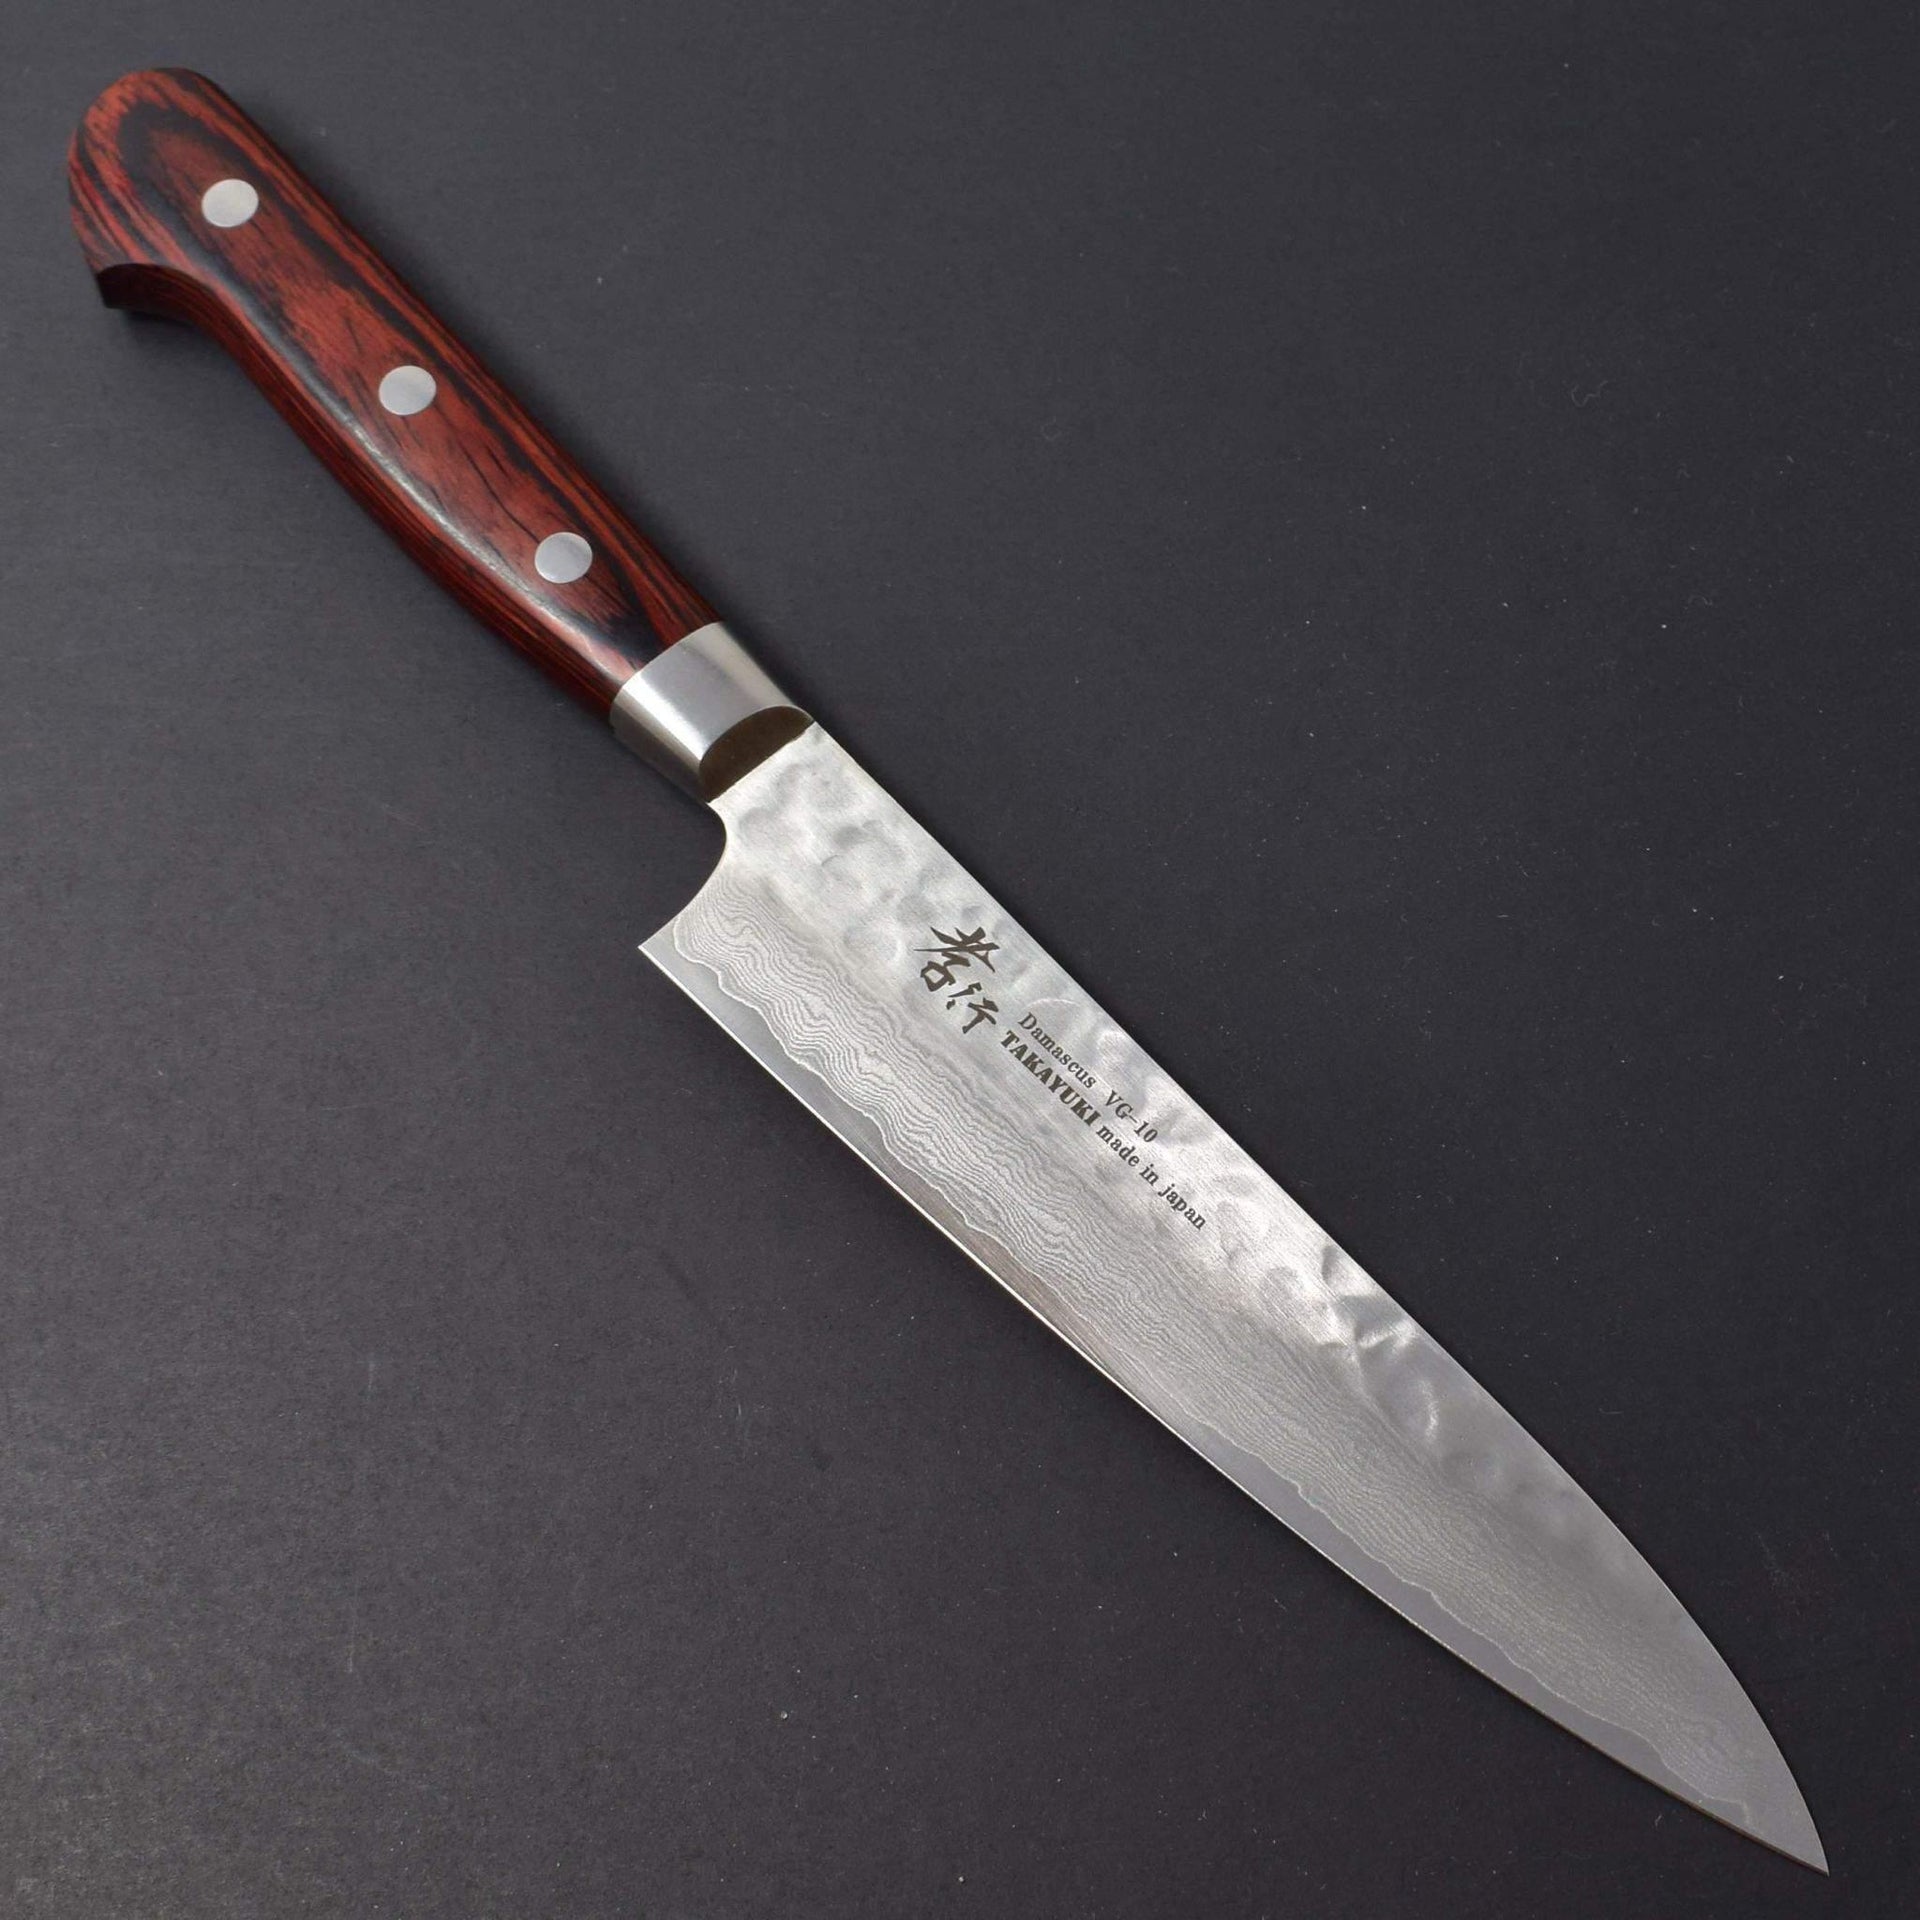 Sakai Takayuki 33 Layer Damascus Petty 150mm-Knife-Sakai Takayuki-Carbon Knife Co